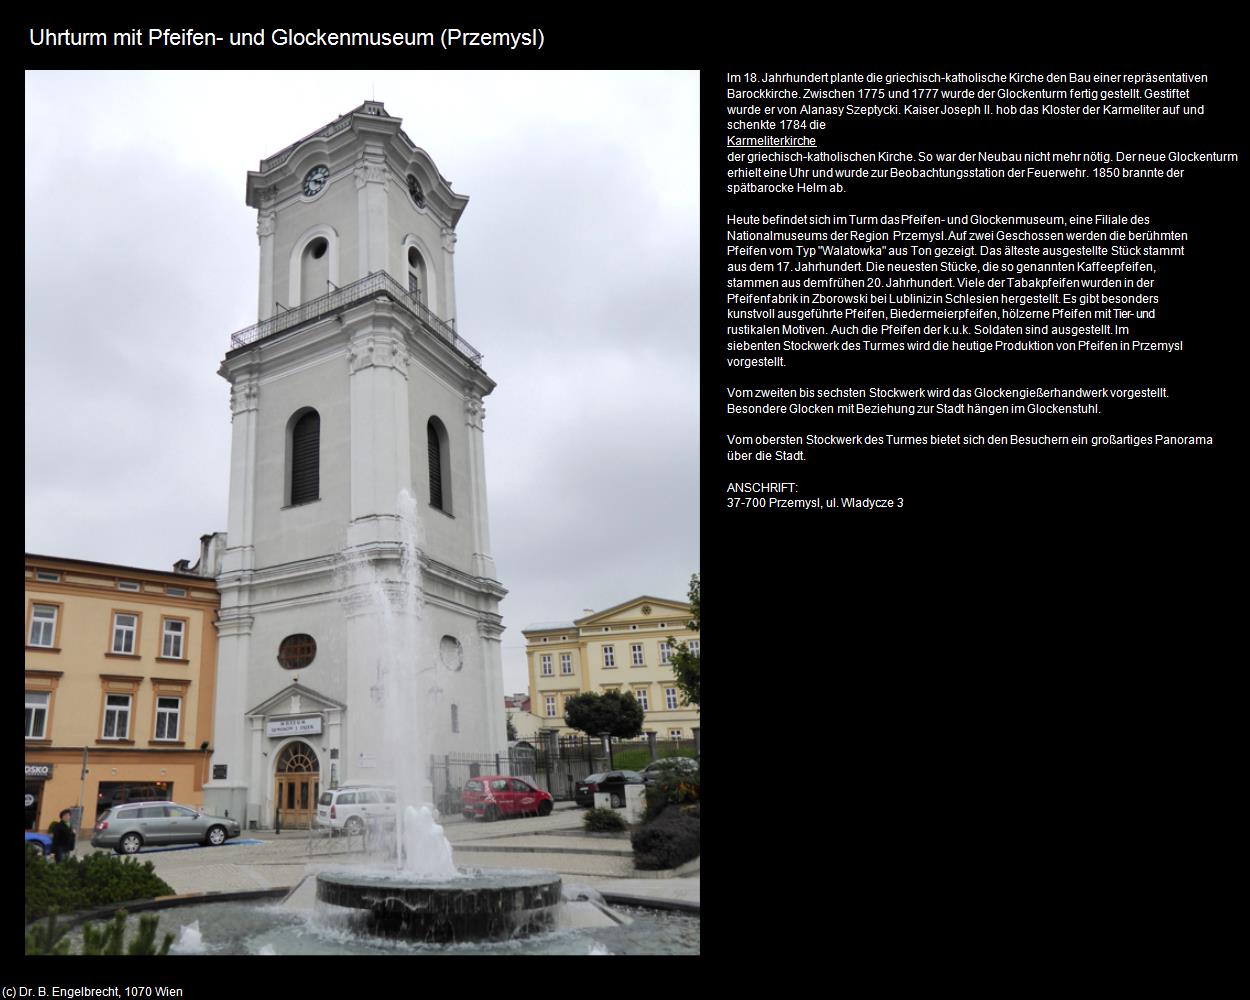 Uhrturm mit Pfeifen- und Glockenmuseum (Przemysl) in POLEN-Galizien(c)B.Engelbrecht